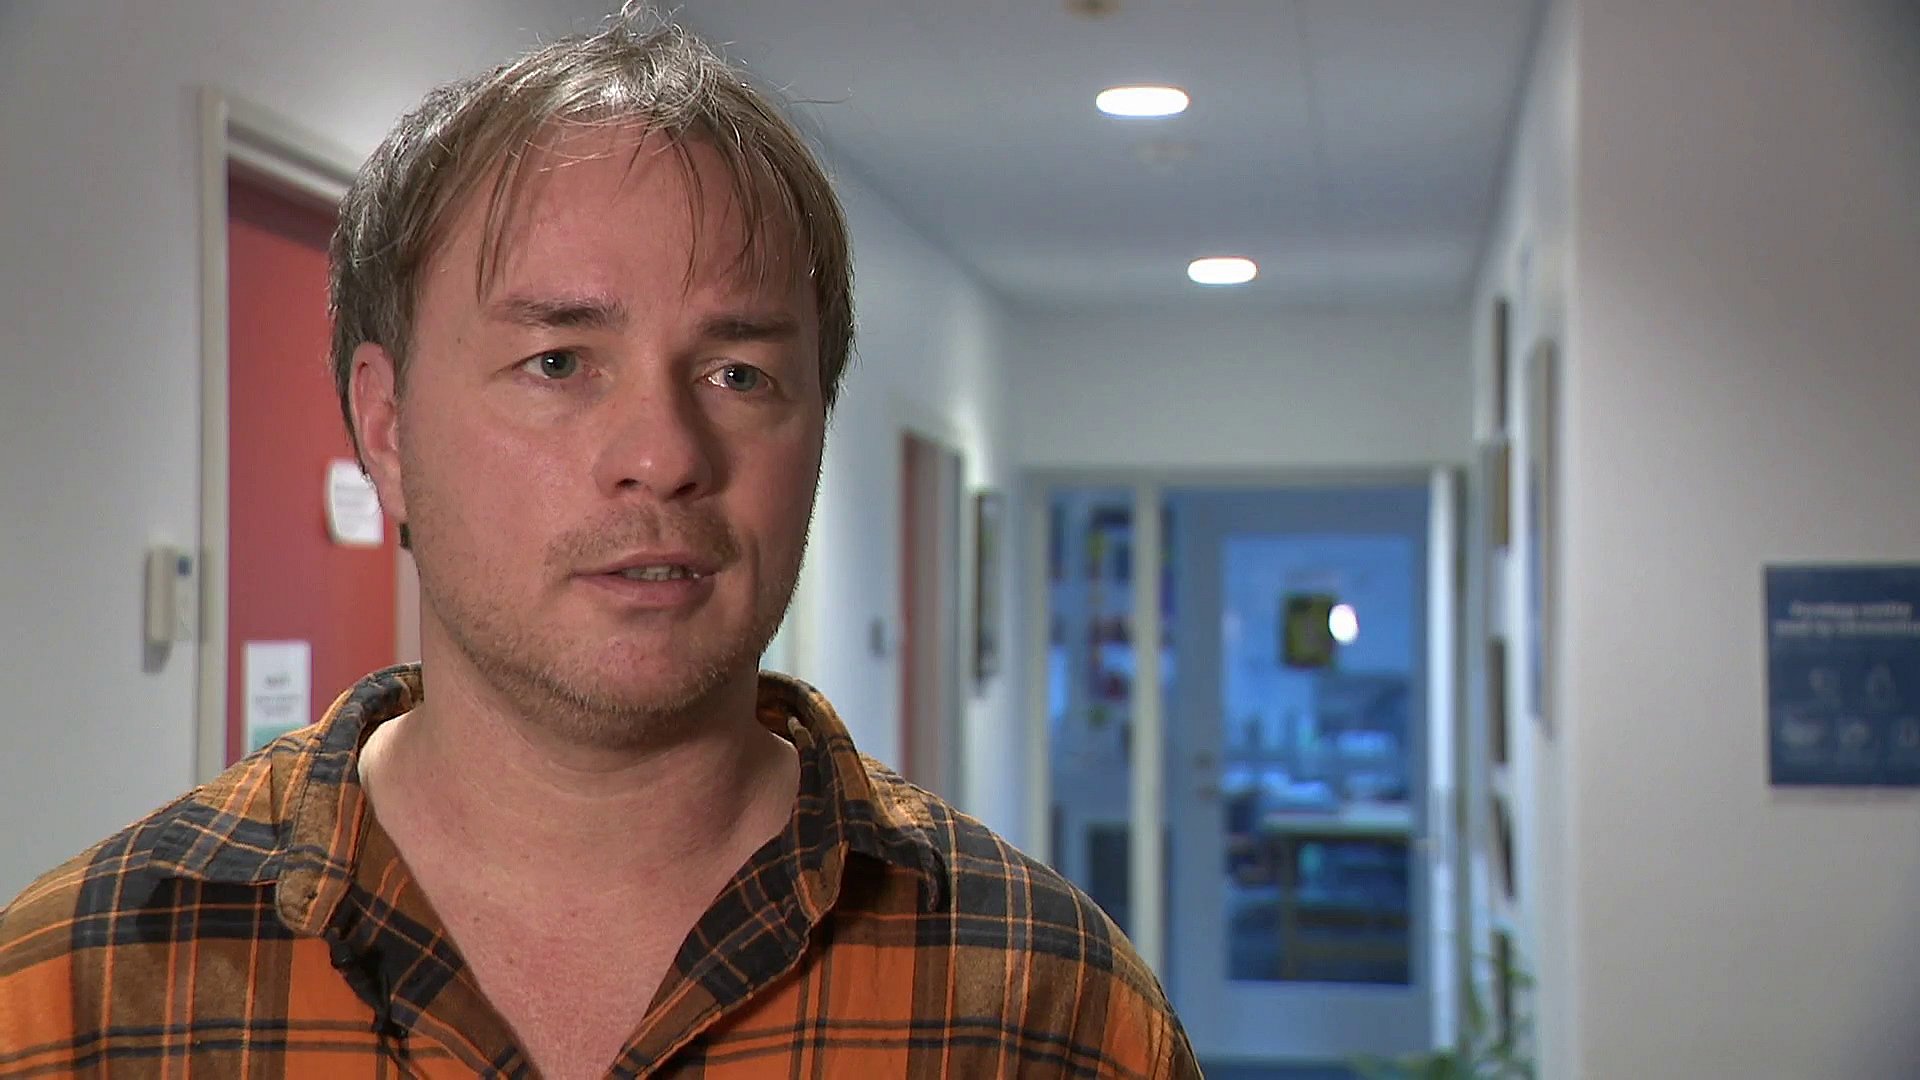 Ny sundhedsklinik: Skal hjælpe udsatte med sår og kønssygdomme | TV2 Østjylland